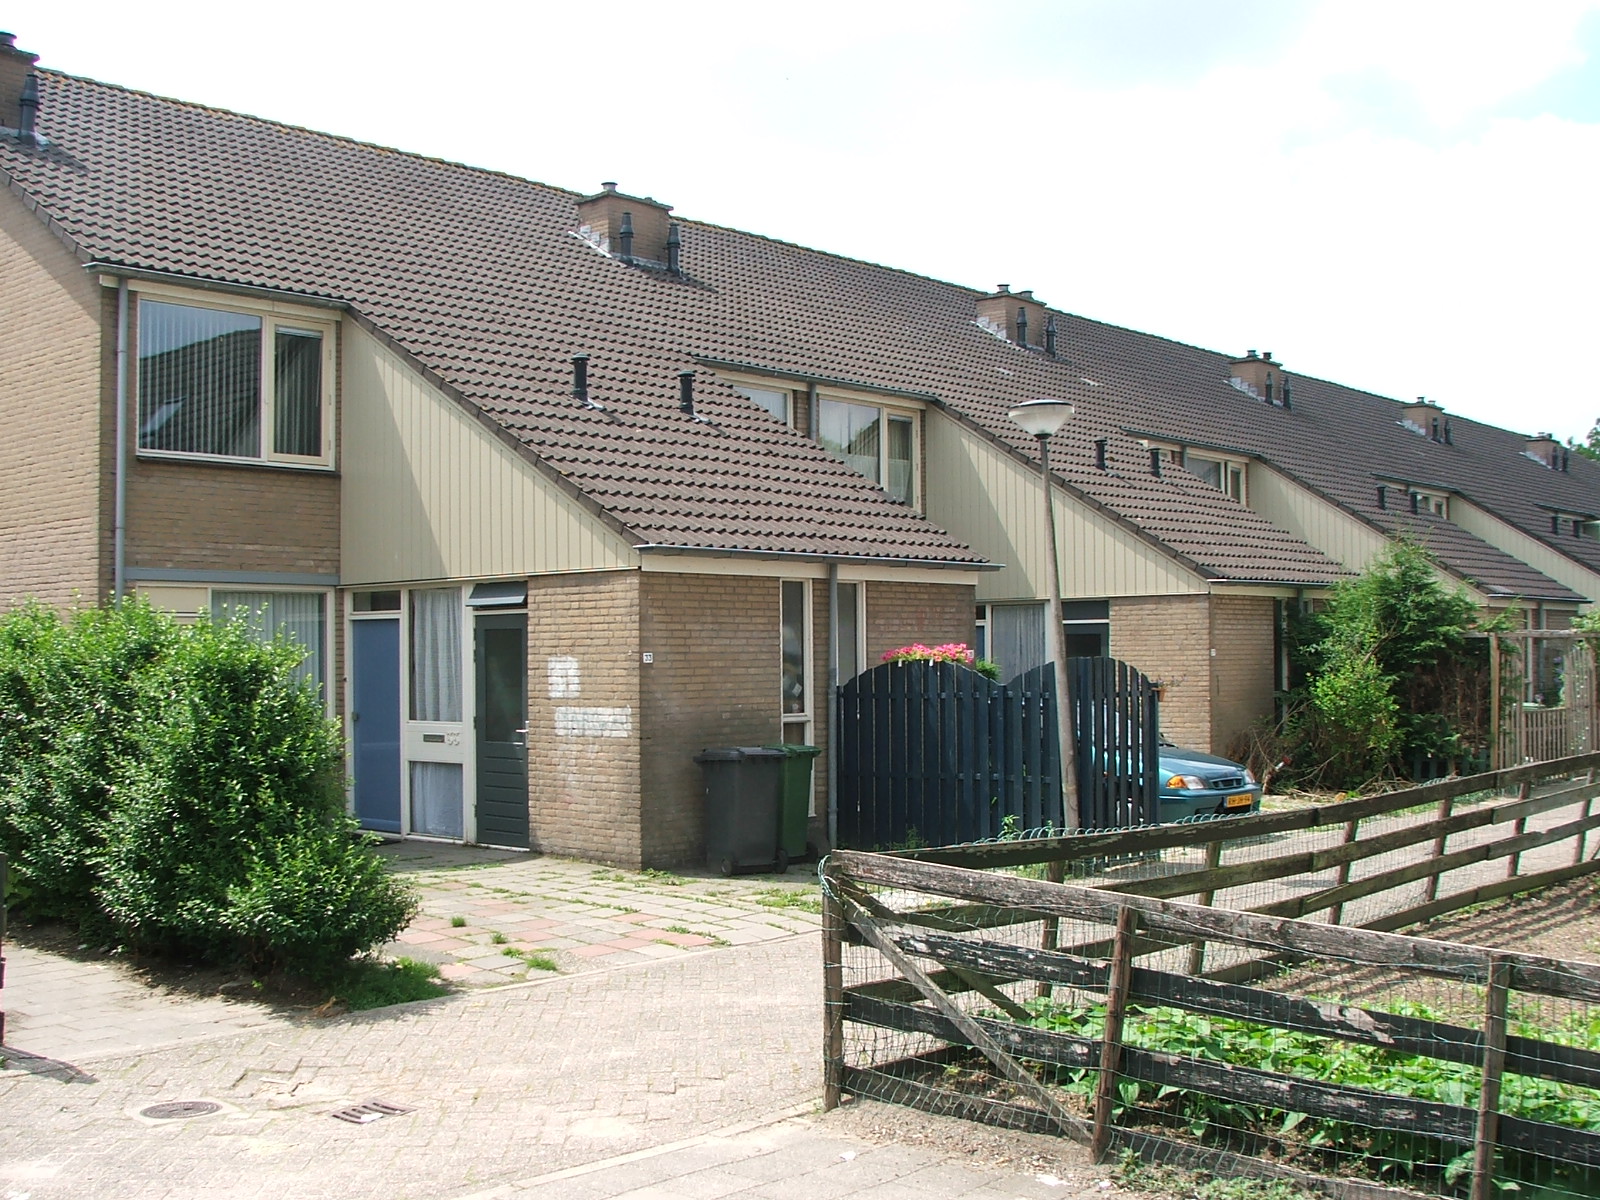 Beverlanderhof 51, 2461 BV Ter Aar, Nederland